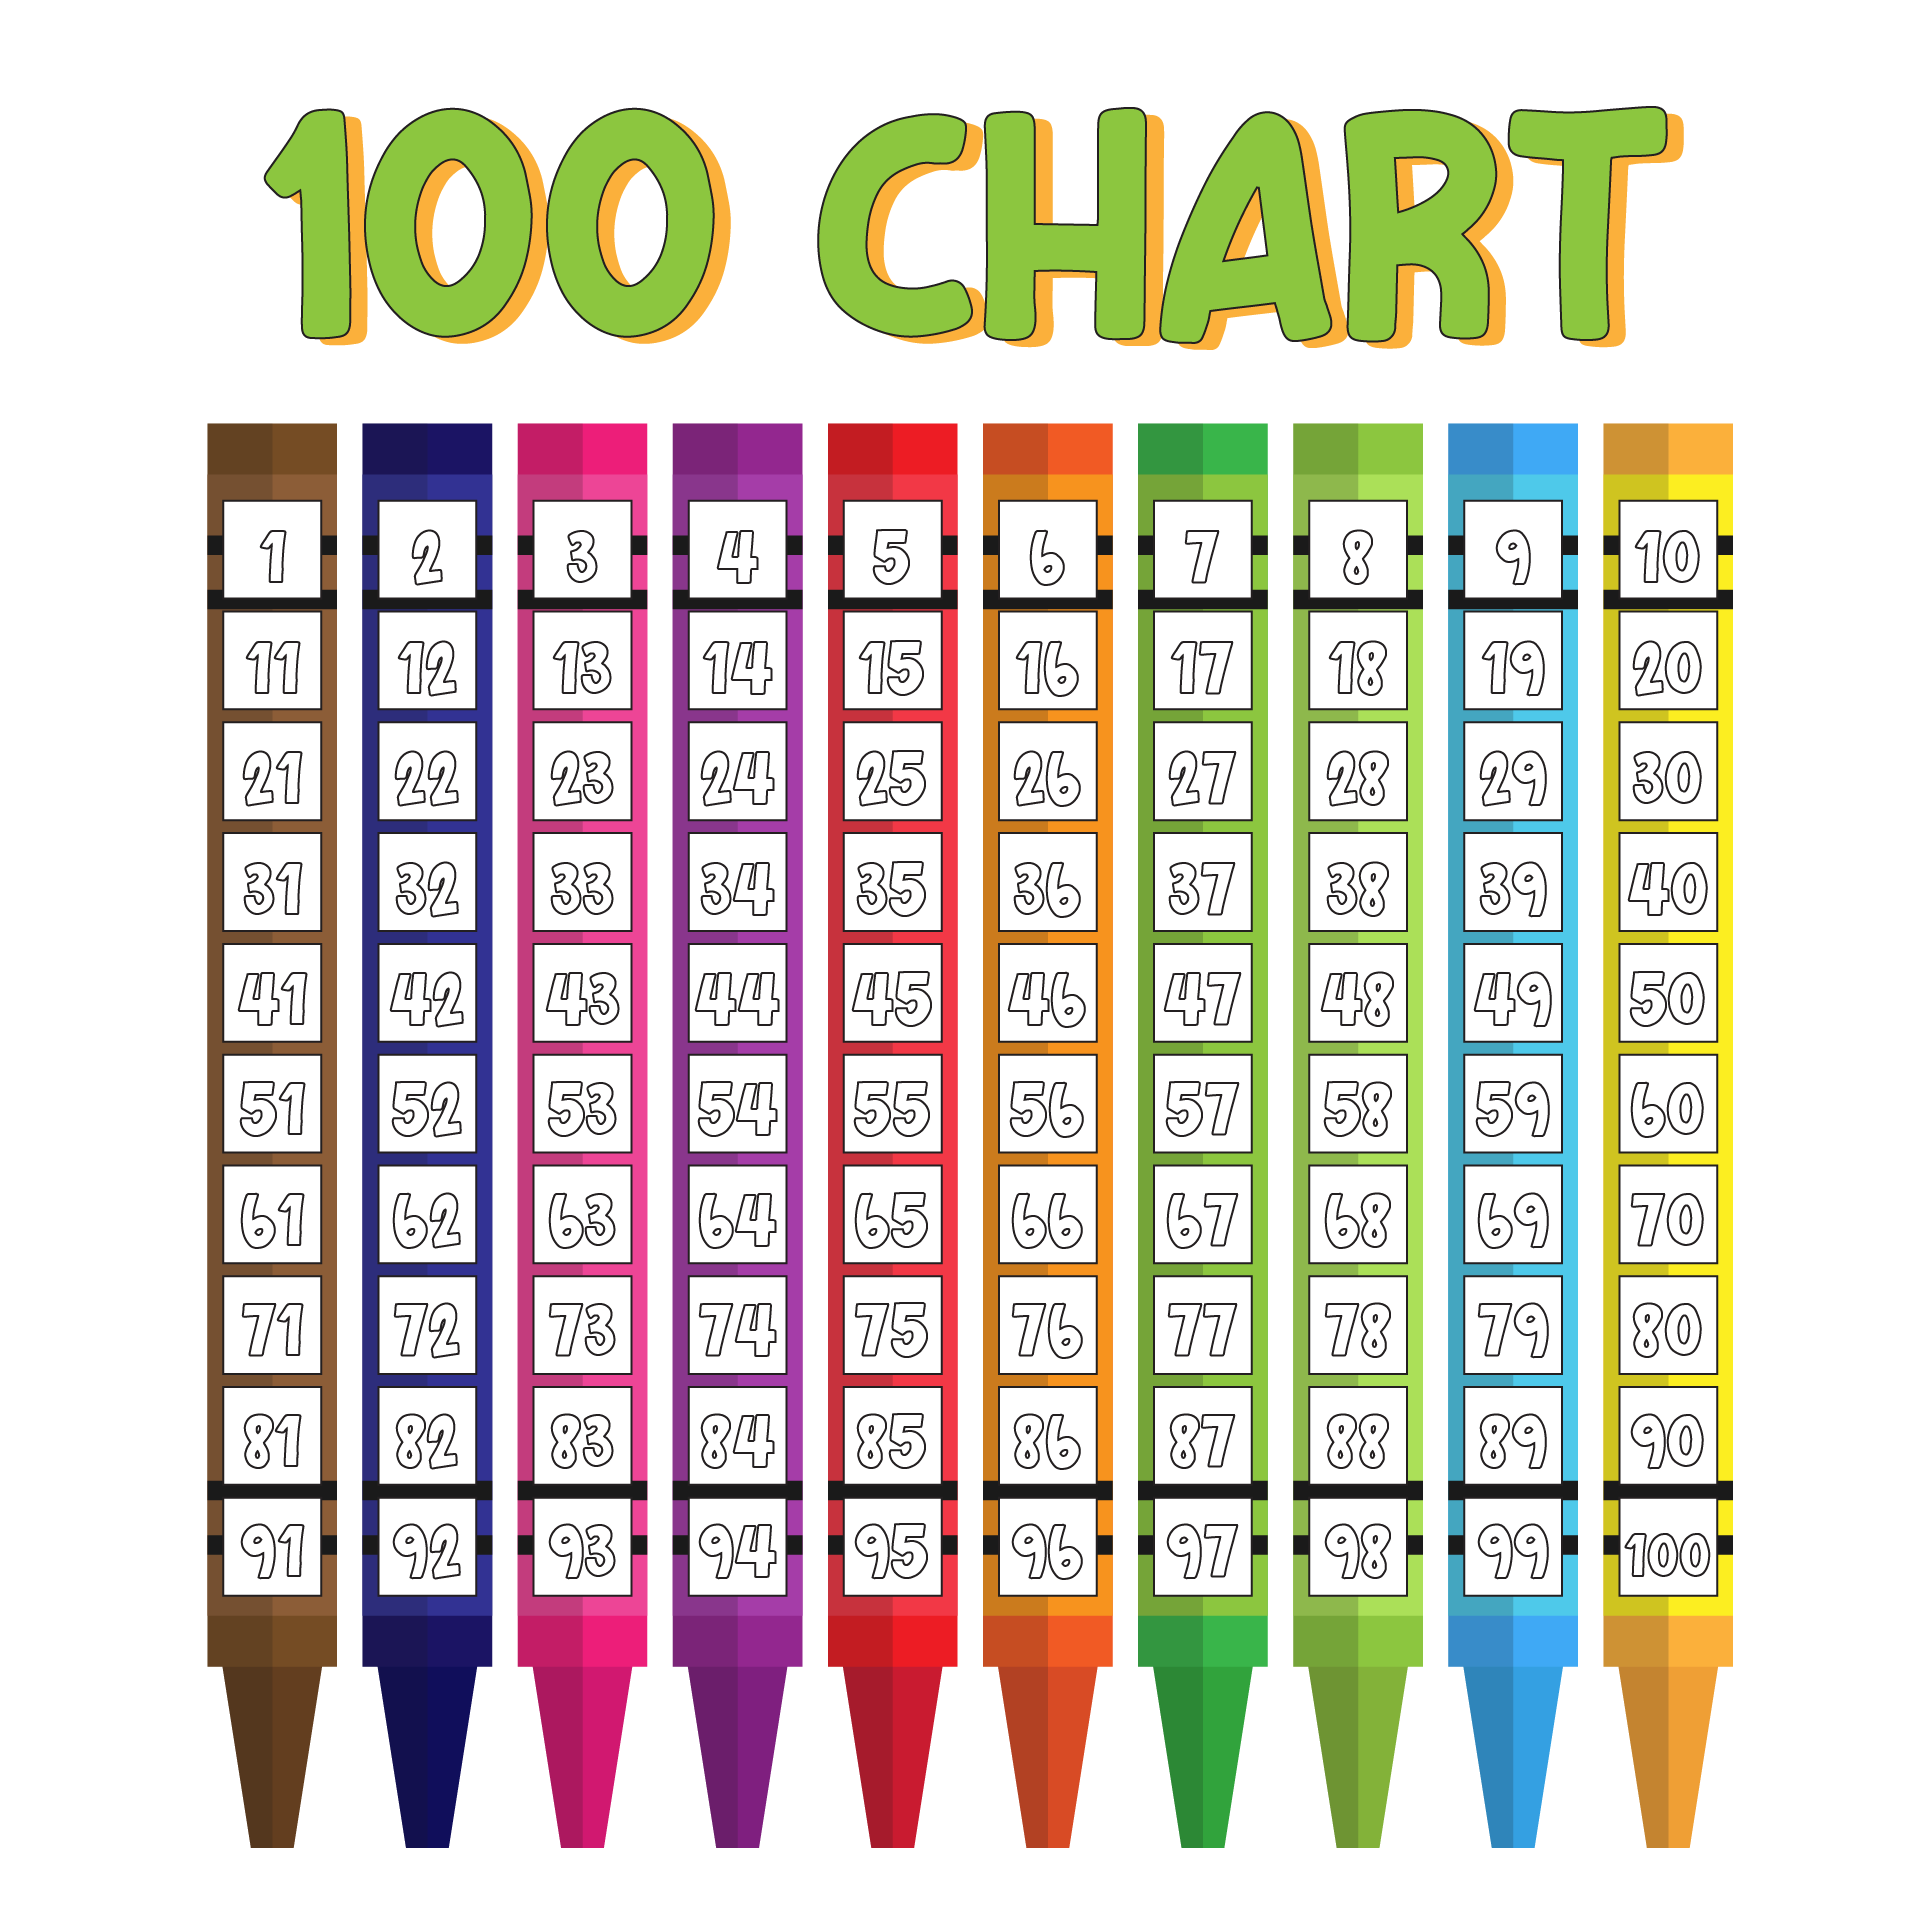 A Hundreds Chart